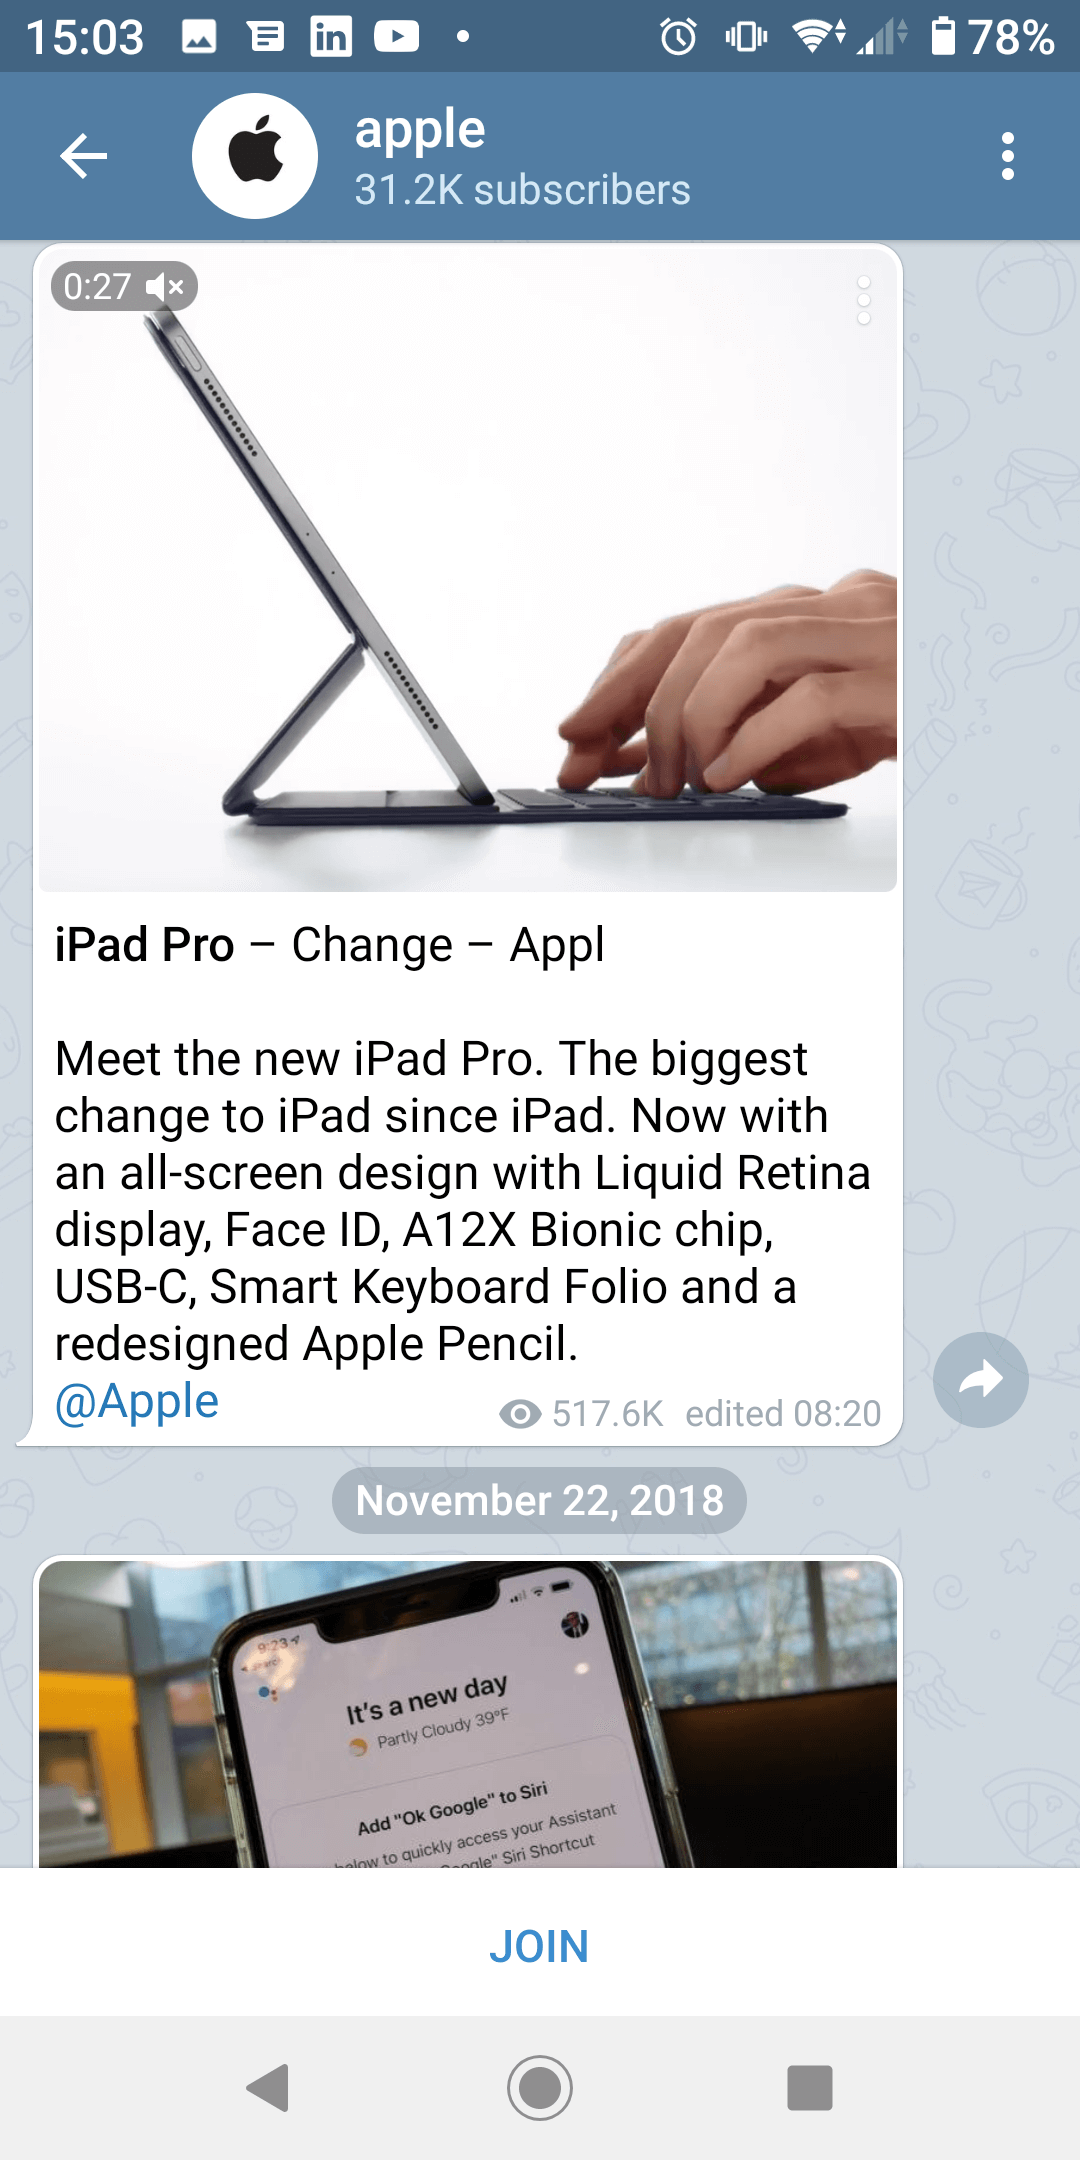 instal the new version for apple Telegram 4.8.7